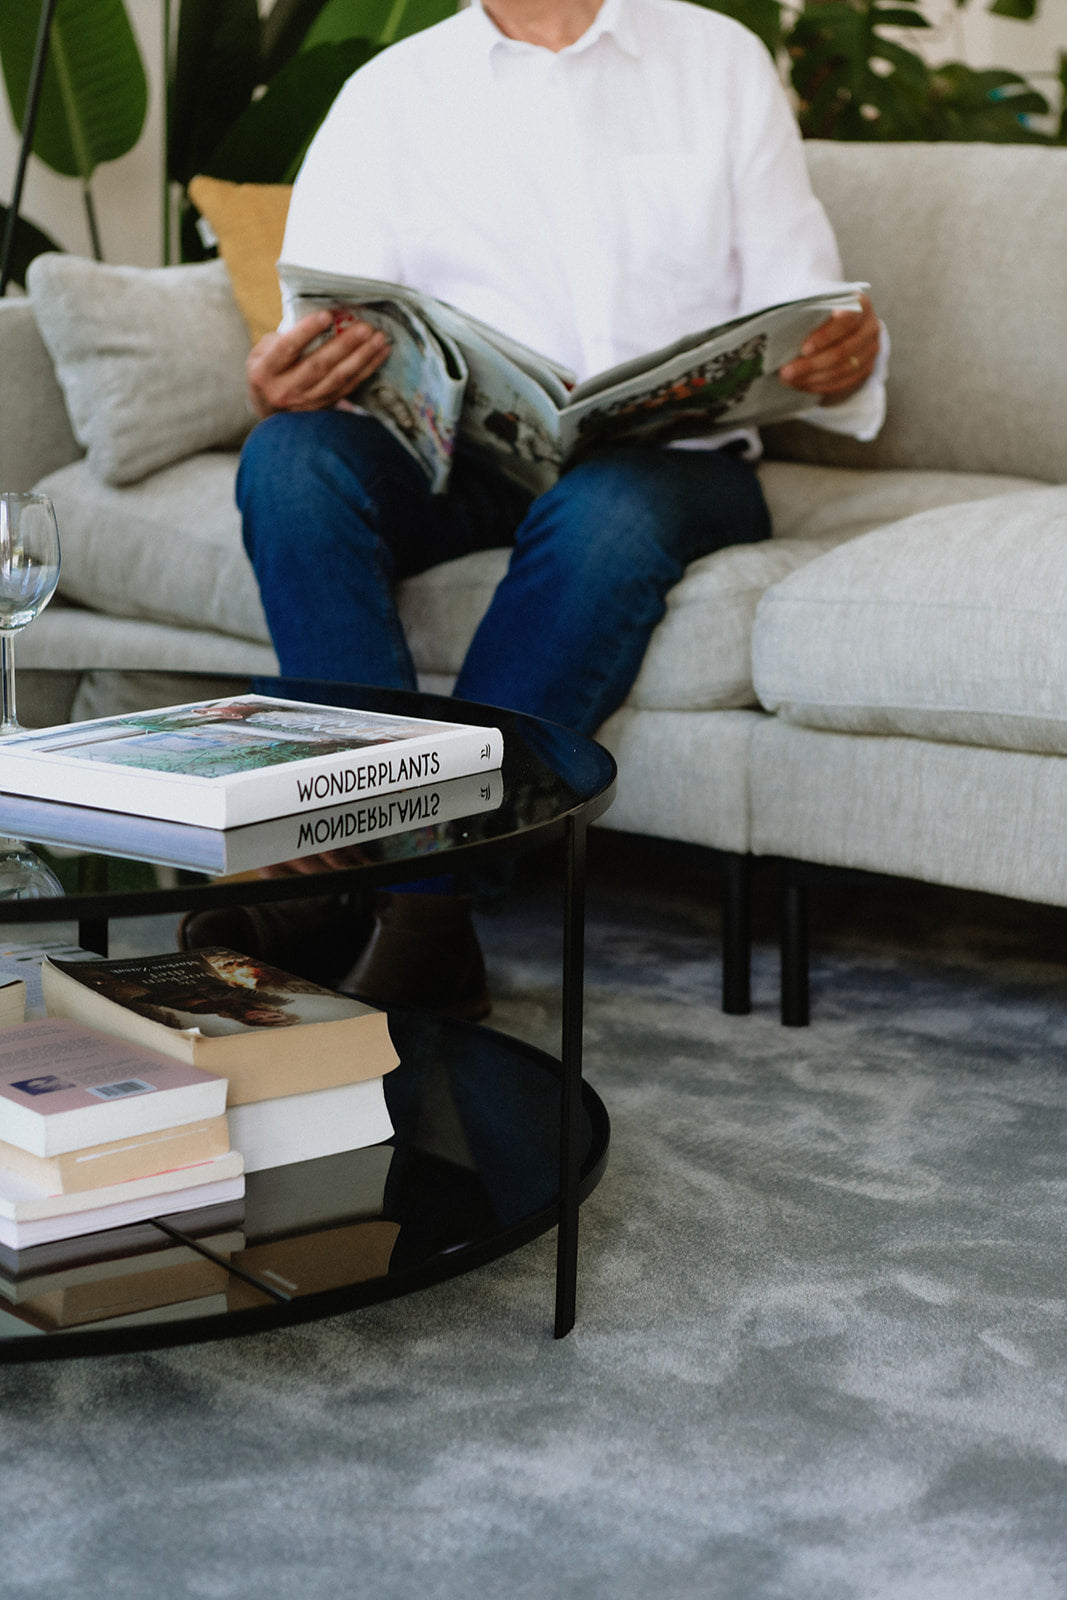 Interieur met bijzettafel, zetel en man die krant leest op een zacht duurzaam grijs vloerkleed.